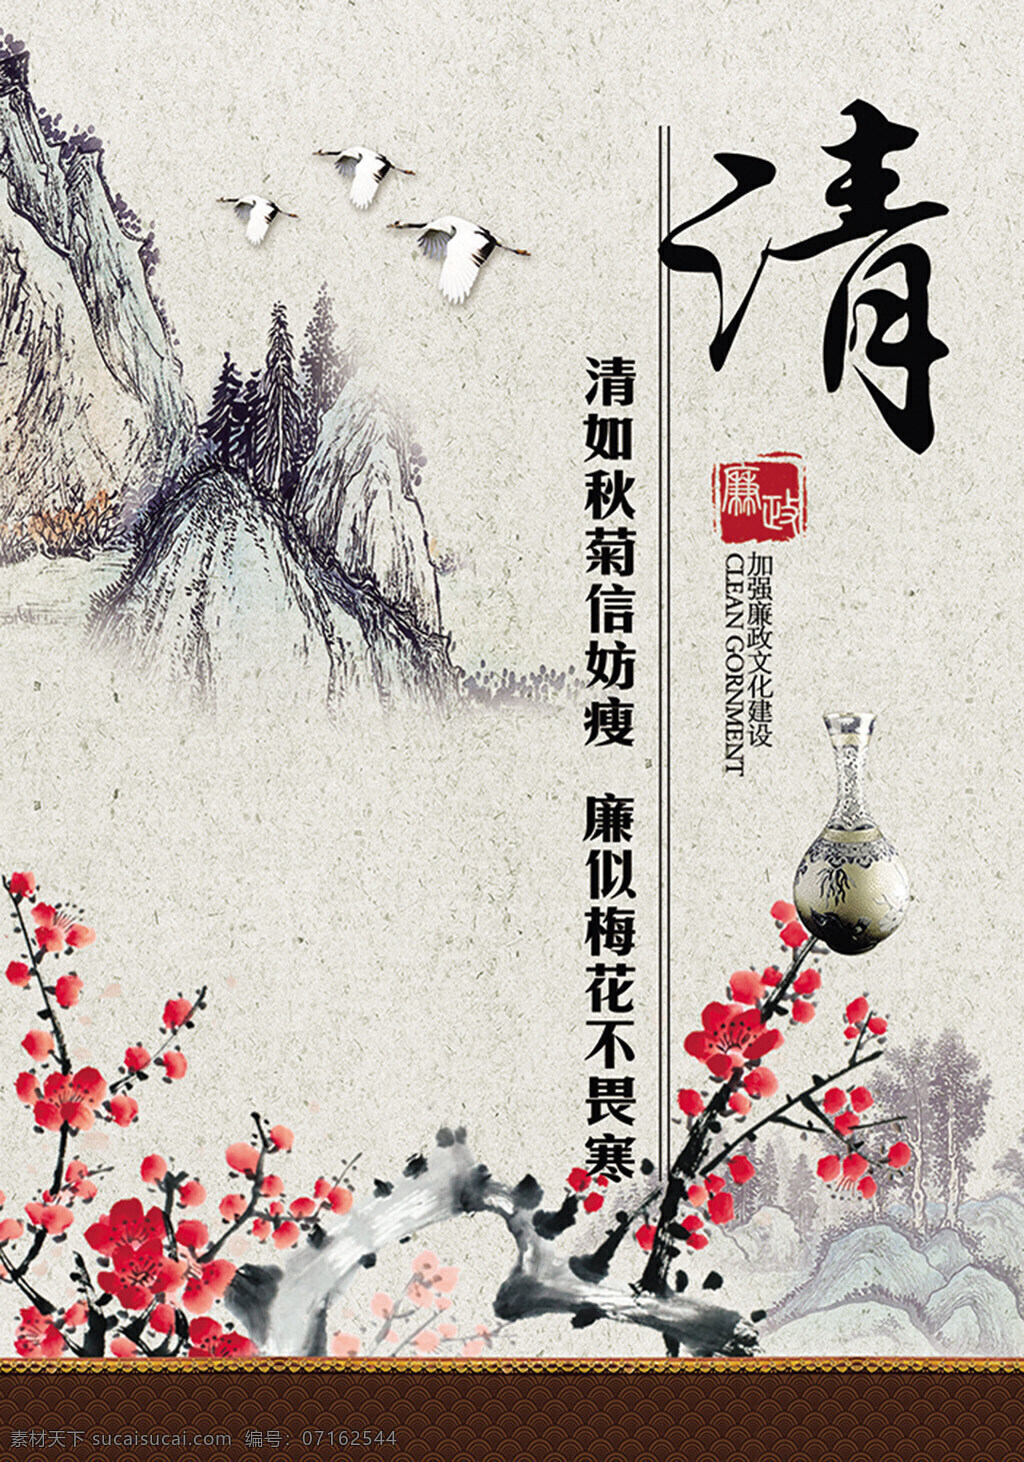 中国 山水画 海报 中国风海报 海报素材 梅花 瓷器 清 灰色